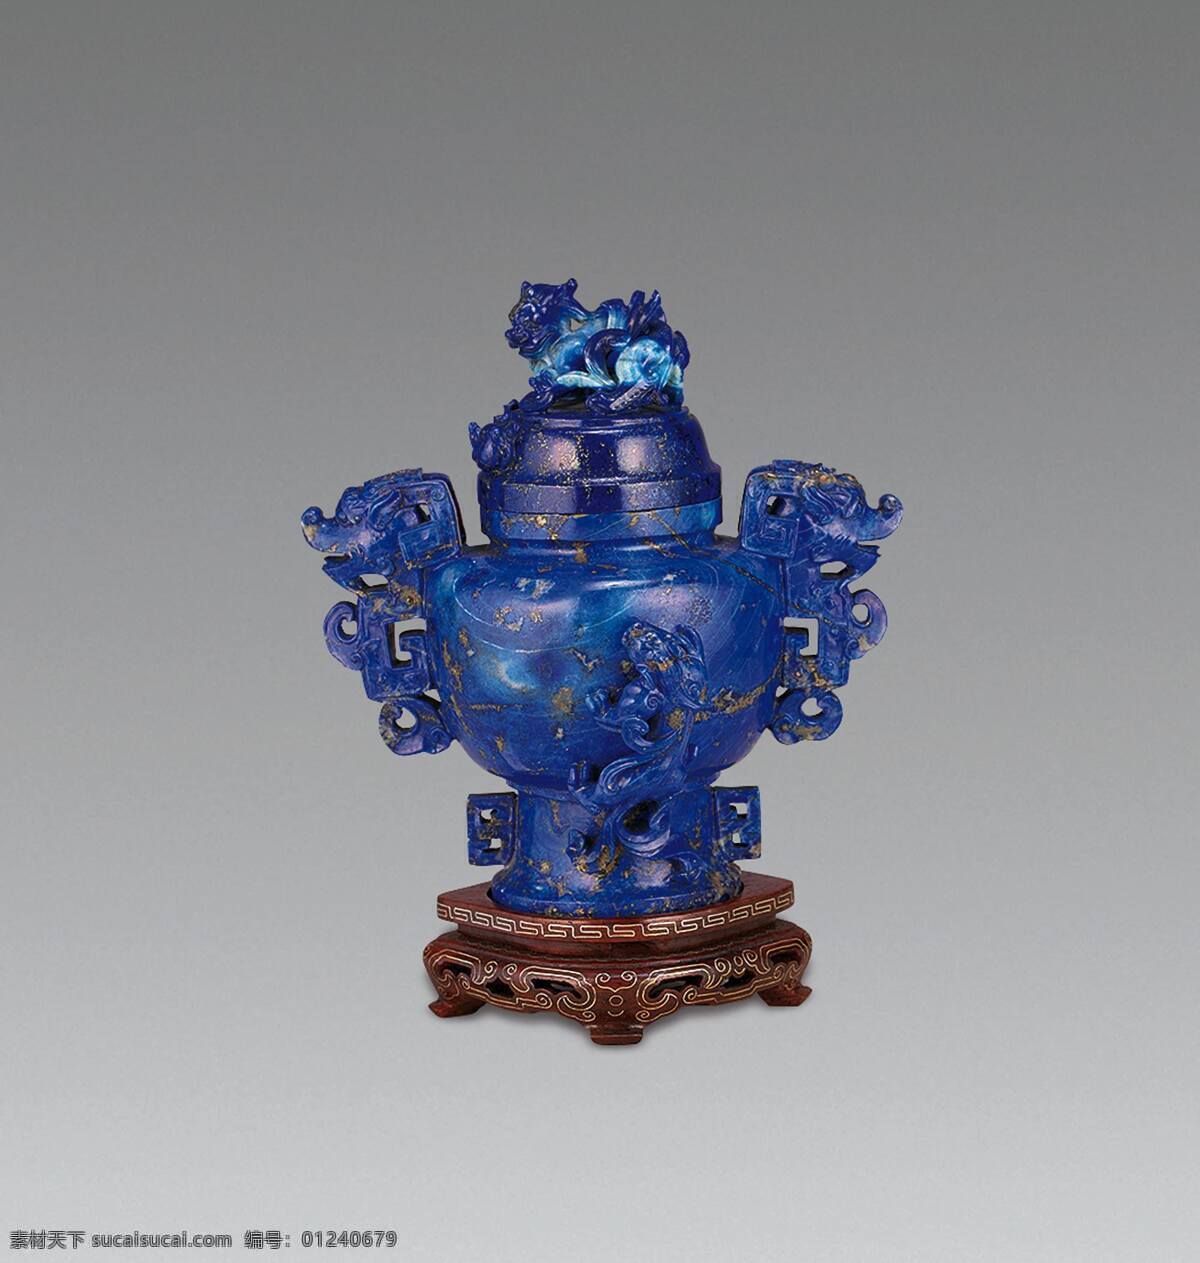 香炉 沉香 瓷器 鼎 香道 文化 古典 古董 文物 收藏 中国传统 中国元素 中国风 传统文化 文化艺术